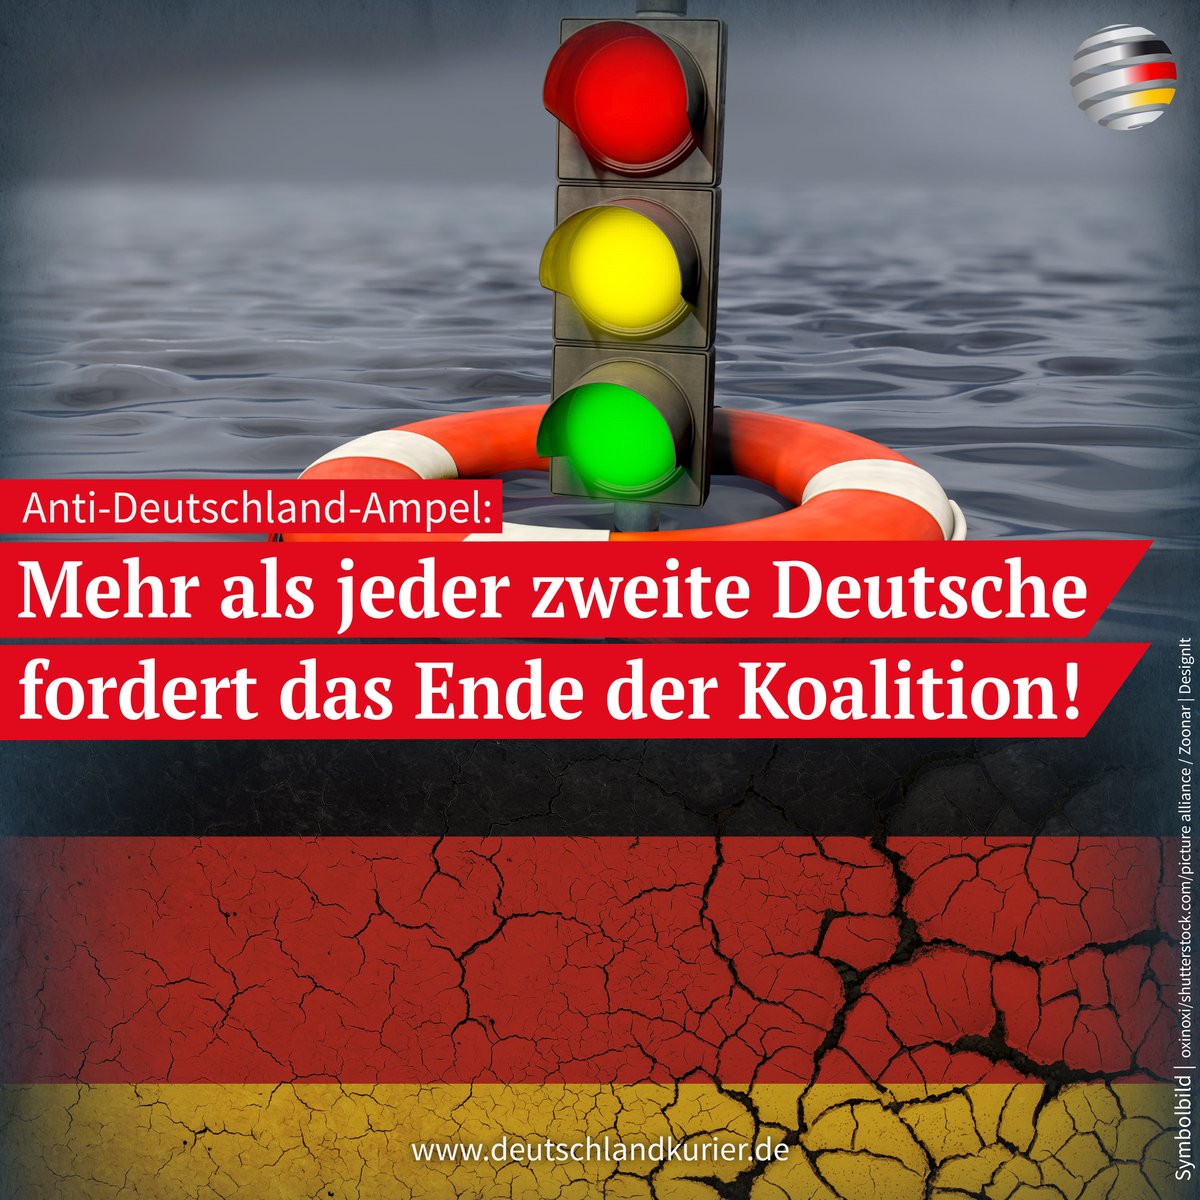 Knapp zwei Wochen nach ihrem jüngsten #Krisentreffen („#Koalitionsausschuss“) streiten #SPD, „#Grüne“ und #FDP schon wieder wie die #Kesselflicker. Den Deutschen reicht es - sie wollen mehrheitlich ein Ende der #Chaos-Ampel!

deutschlandkurier.de/2023/04/anti-d…